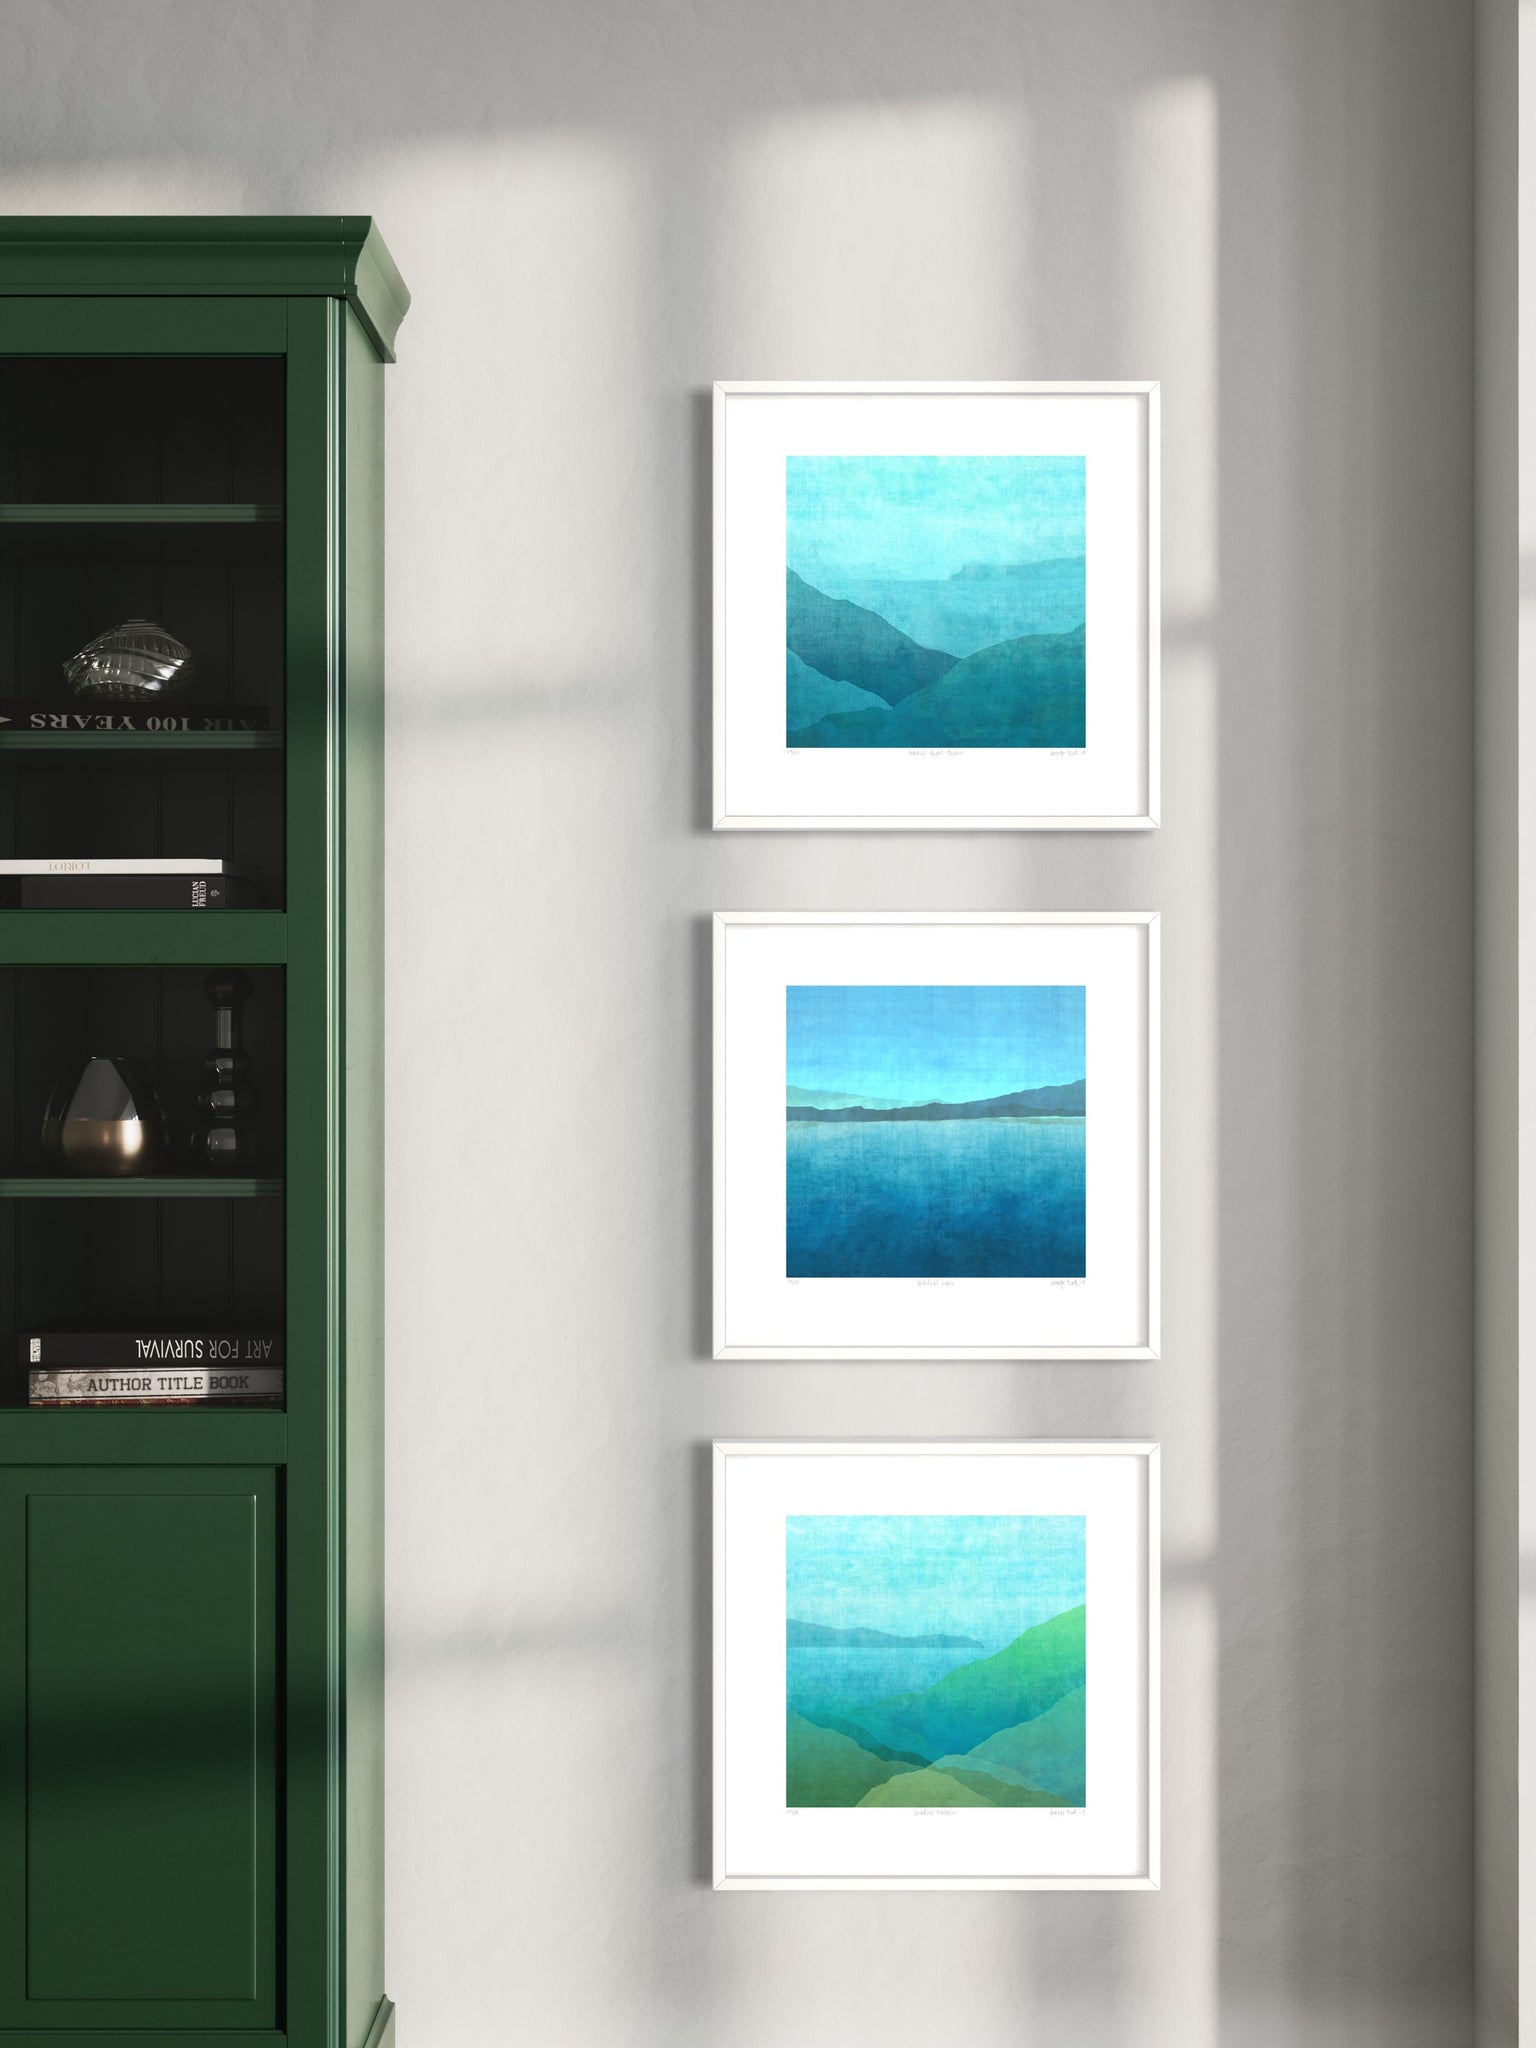 Gradual Harbour Series - Set of 3 - 52cm Framed or Unframed